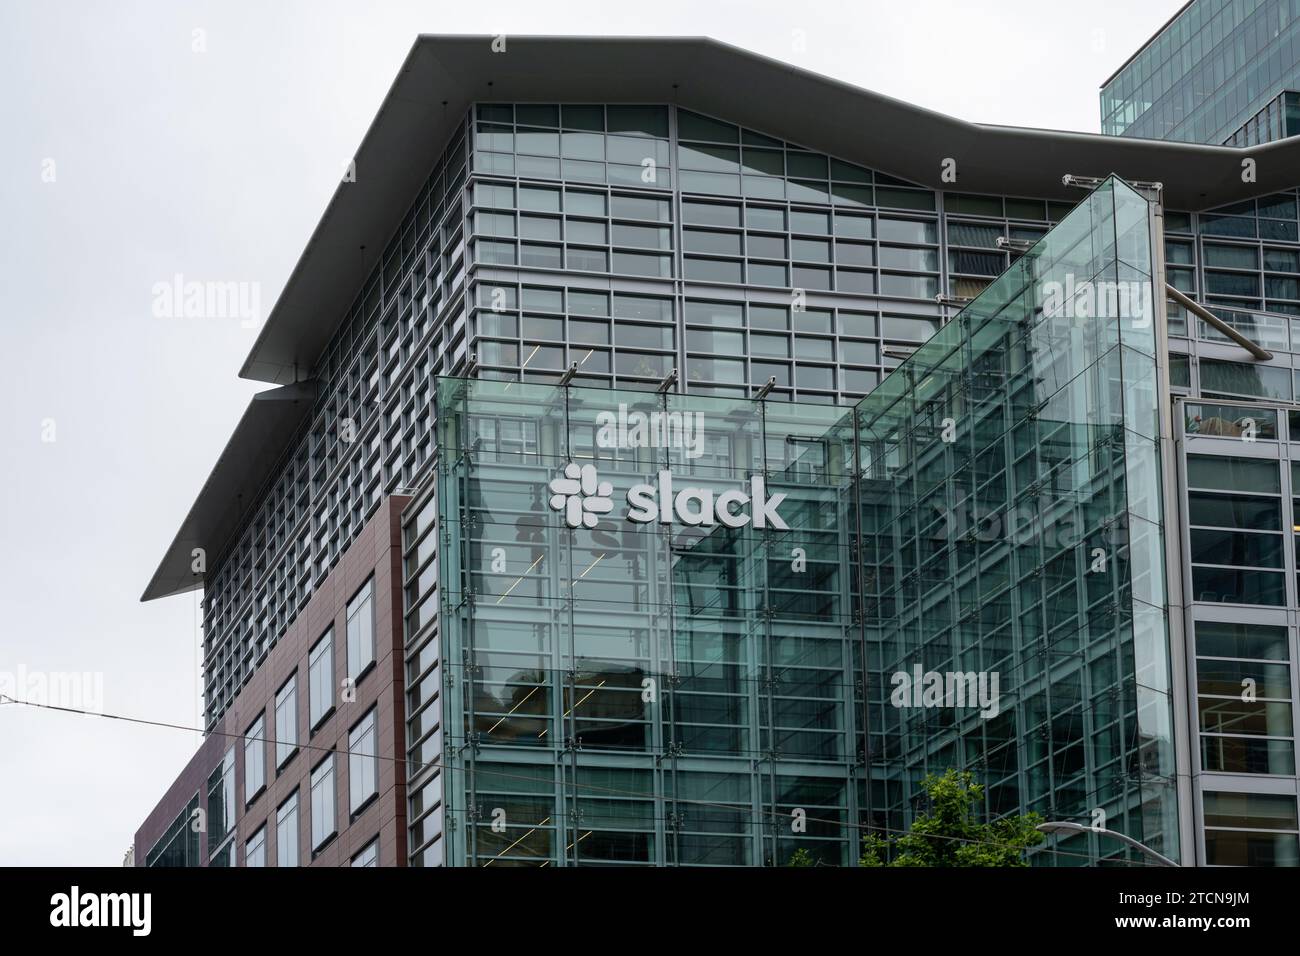 Sede centrale di Slack a San Francisco, California, USA Foto Stock